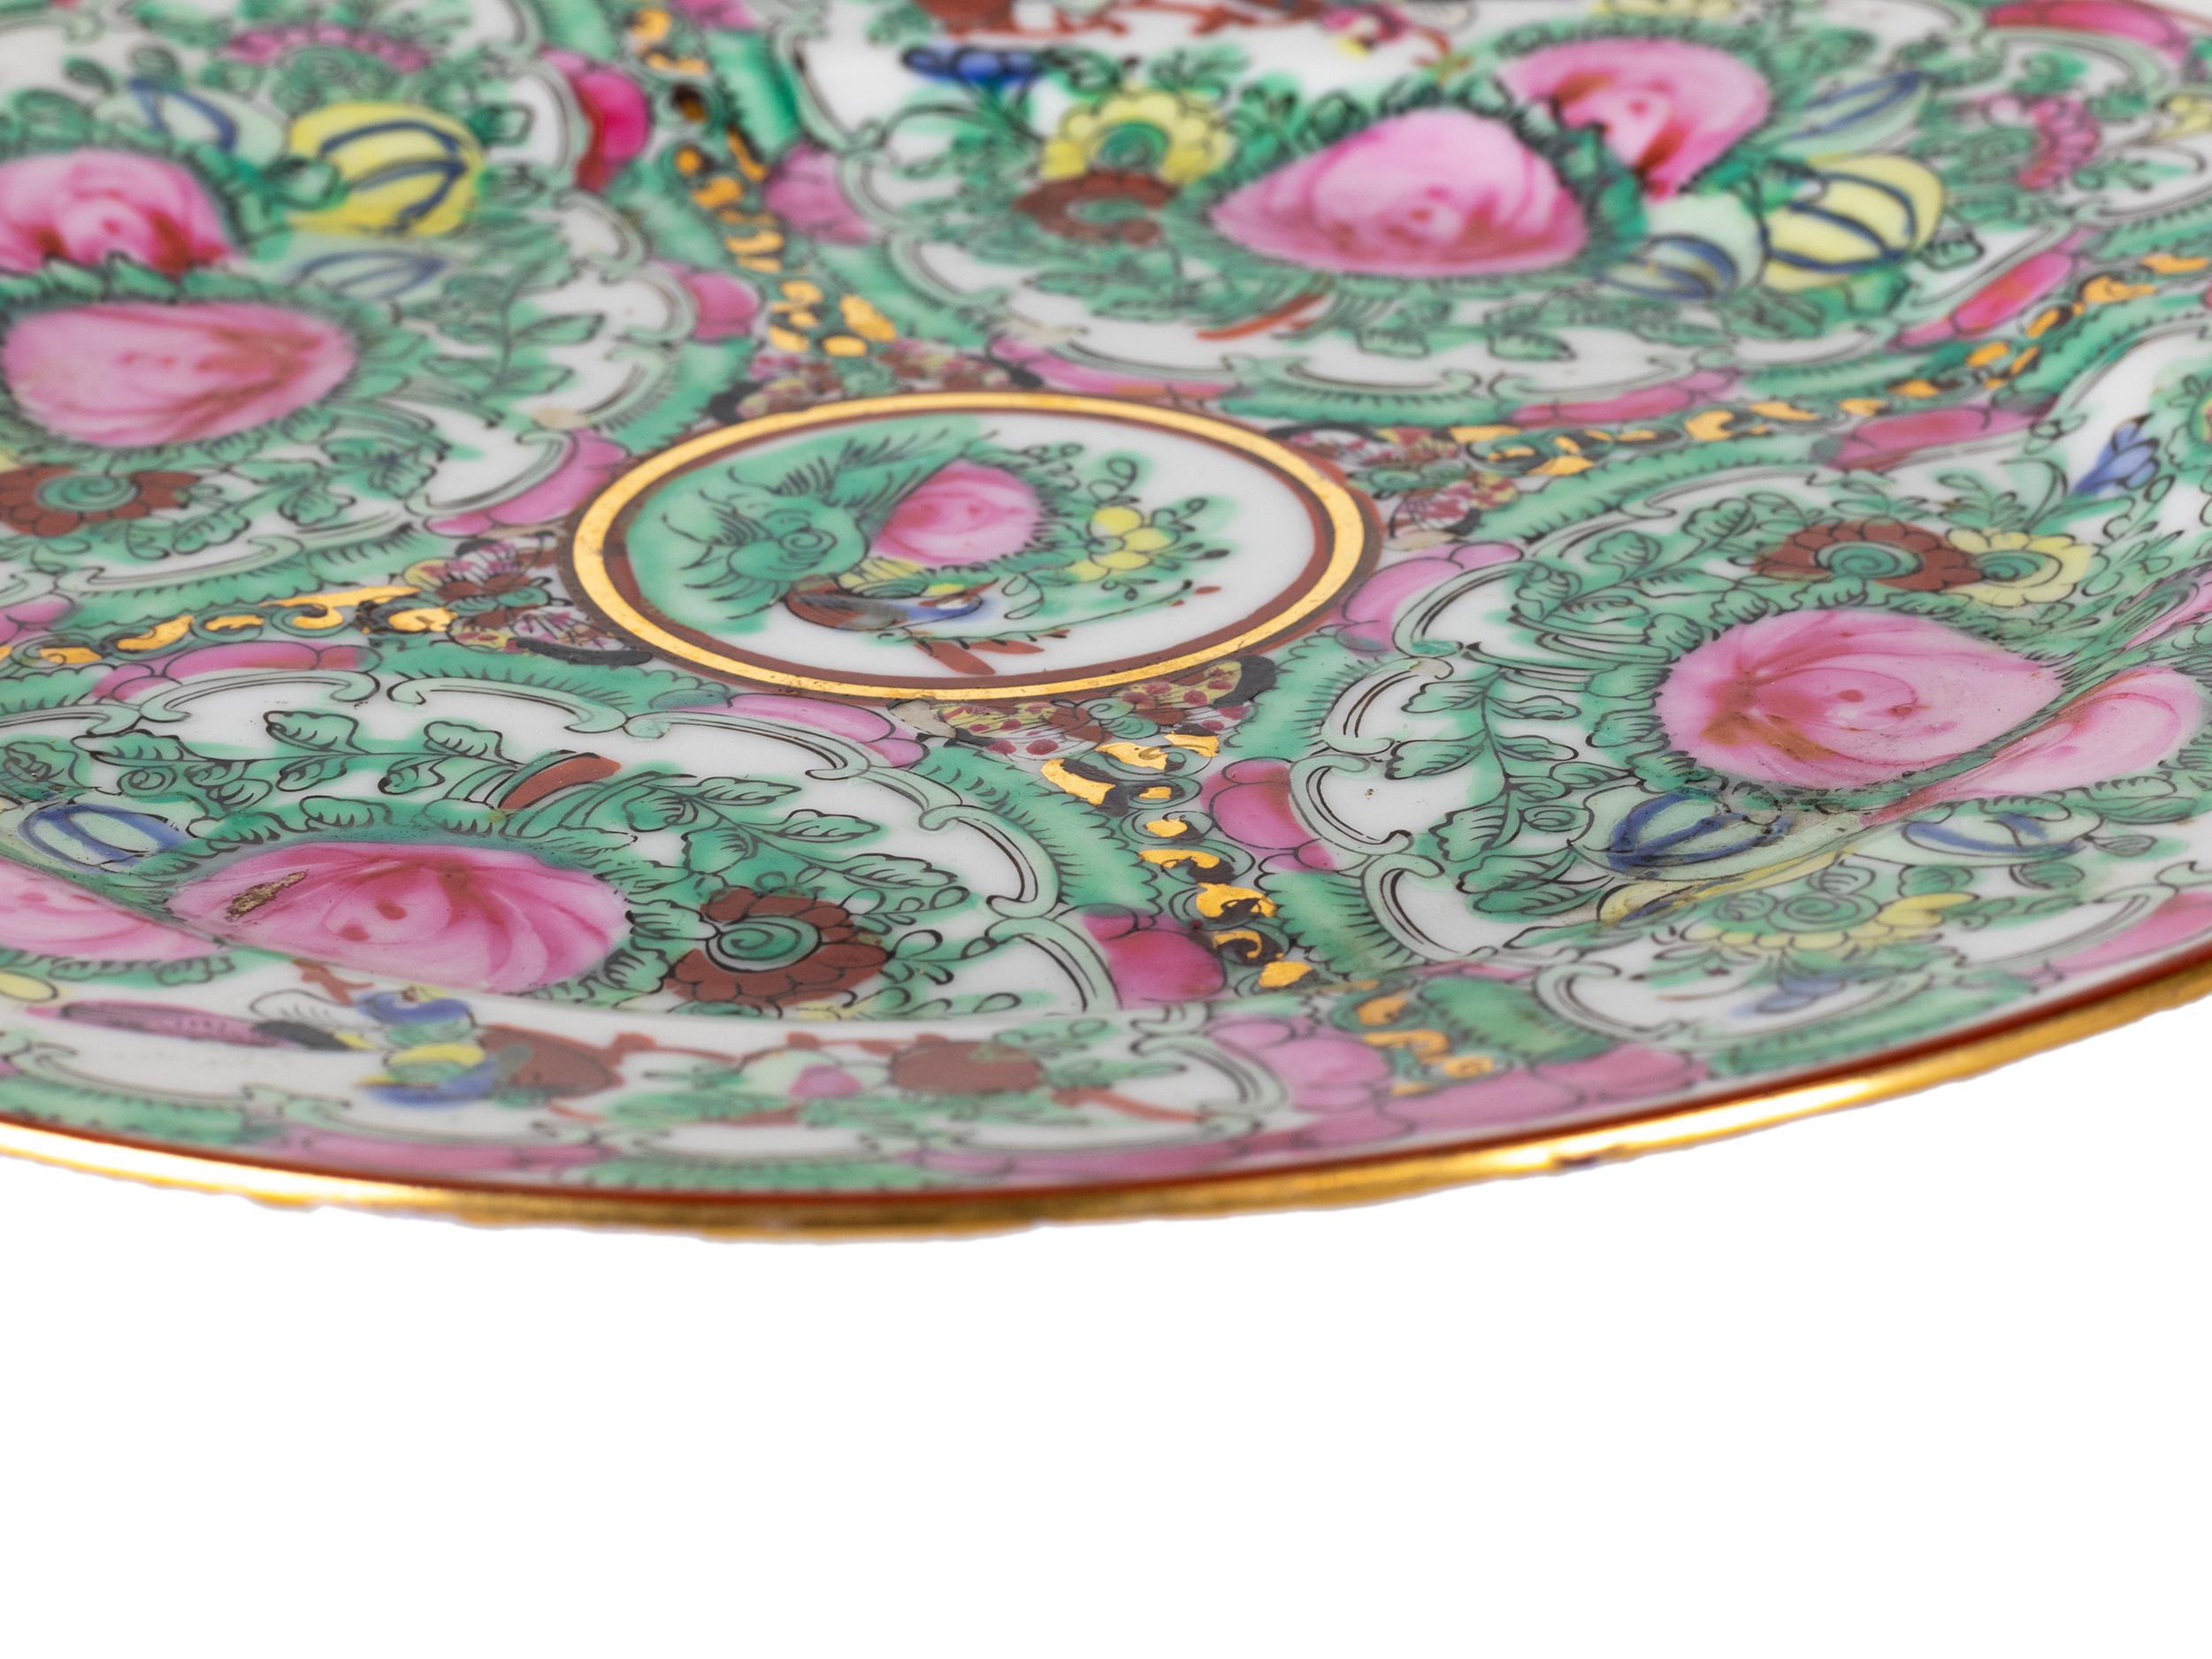 Chinesische Export Macau Porzellan kleine Platte mit der Marke mit rosa und grünen Farben, goldenen Rand und floralen Design.